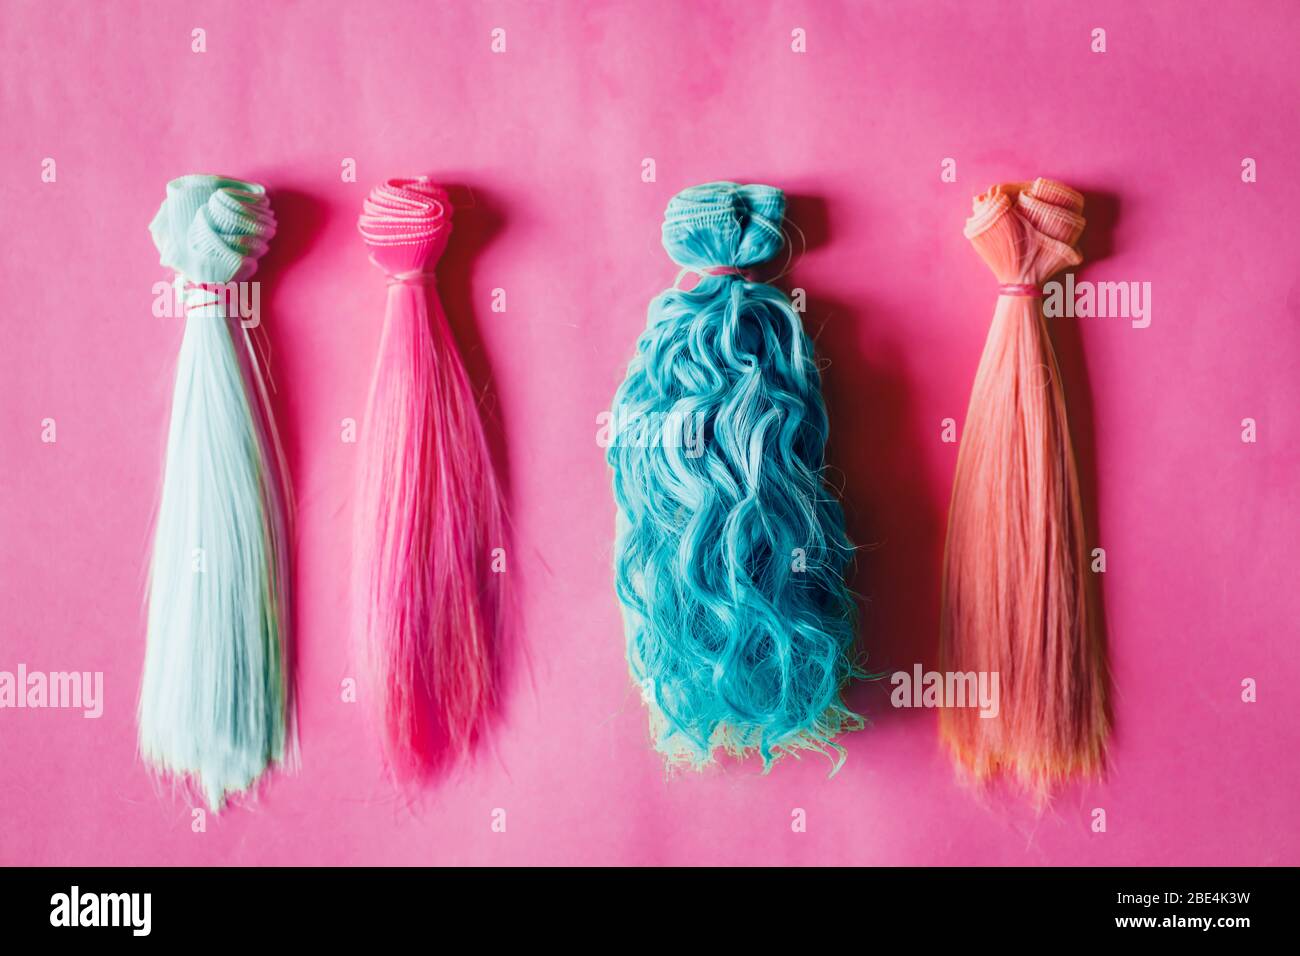 Mehrfarbige gerade und lockiges langes Haar für handgefertigte Puppen auf  rosa Hintergrund. Handarbeit, Hobby, Freizeitkonzept. Draufsicht. Bunte  Puppenhaare Stockfotografie - Alamy